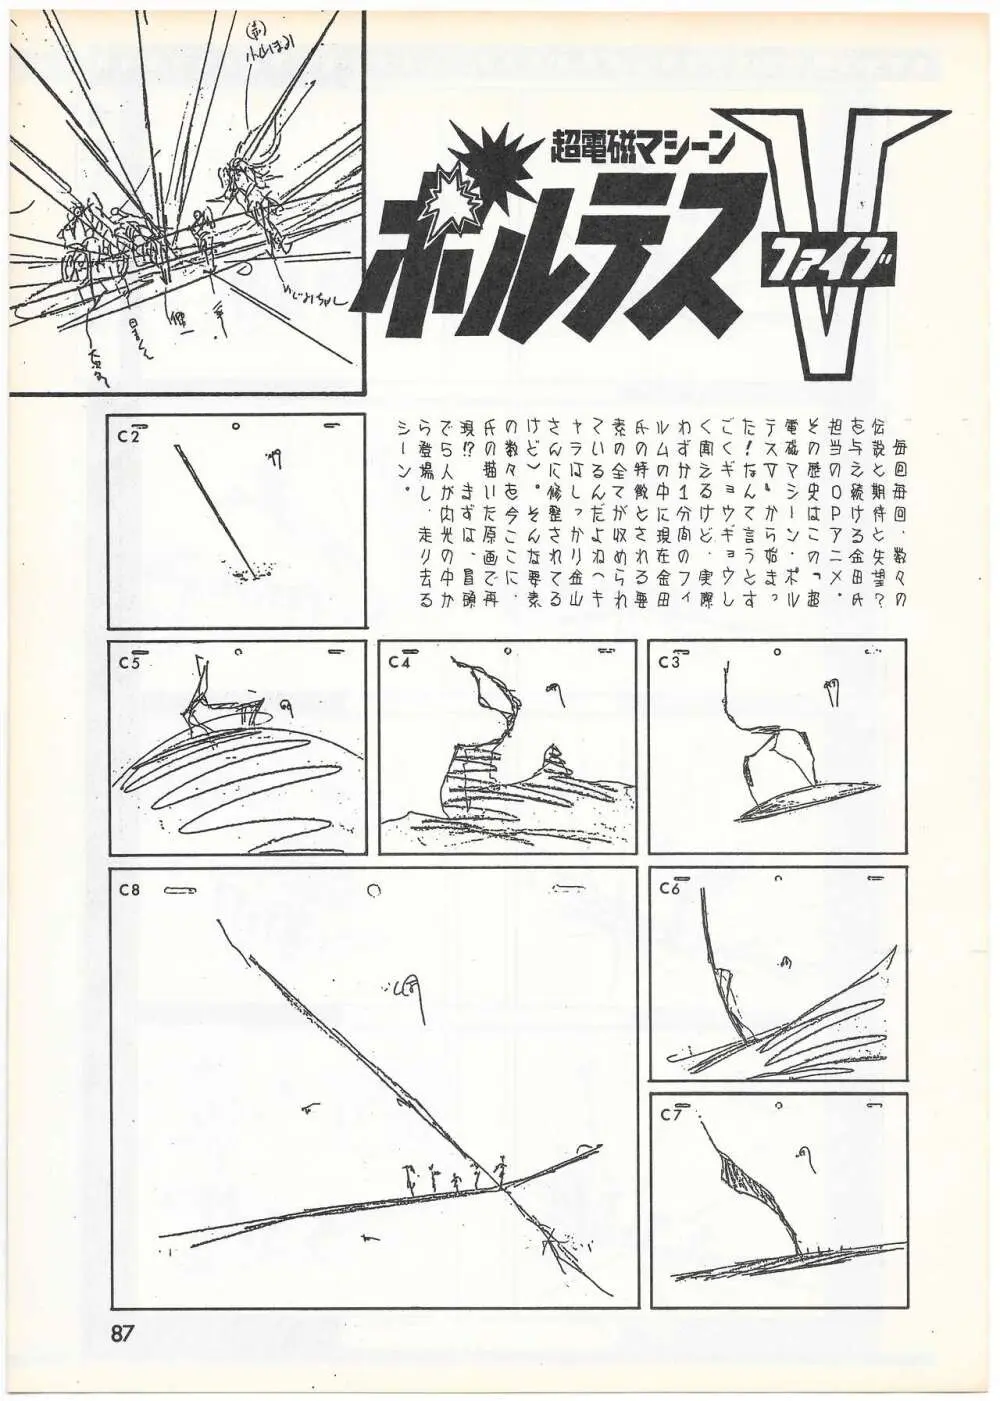 THE ANIMATOR 1 金田伊功特集号 84ページ